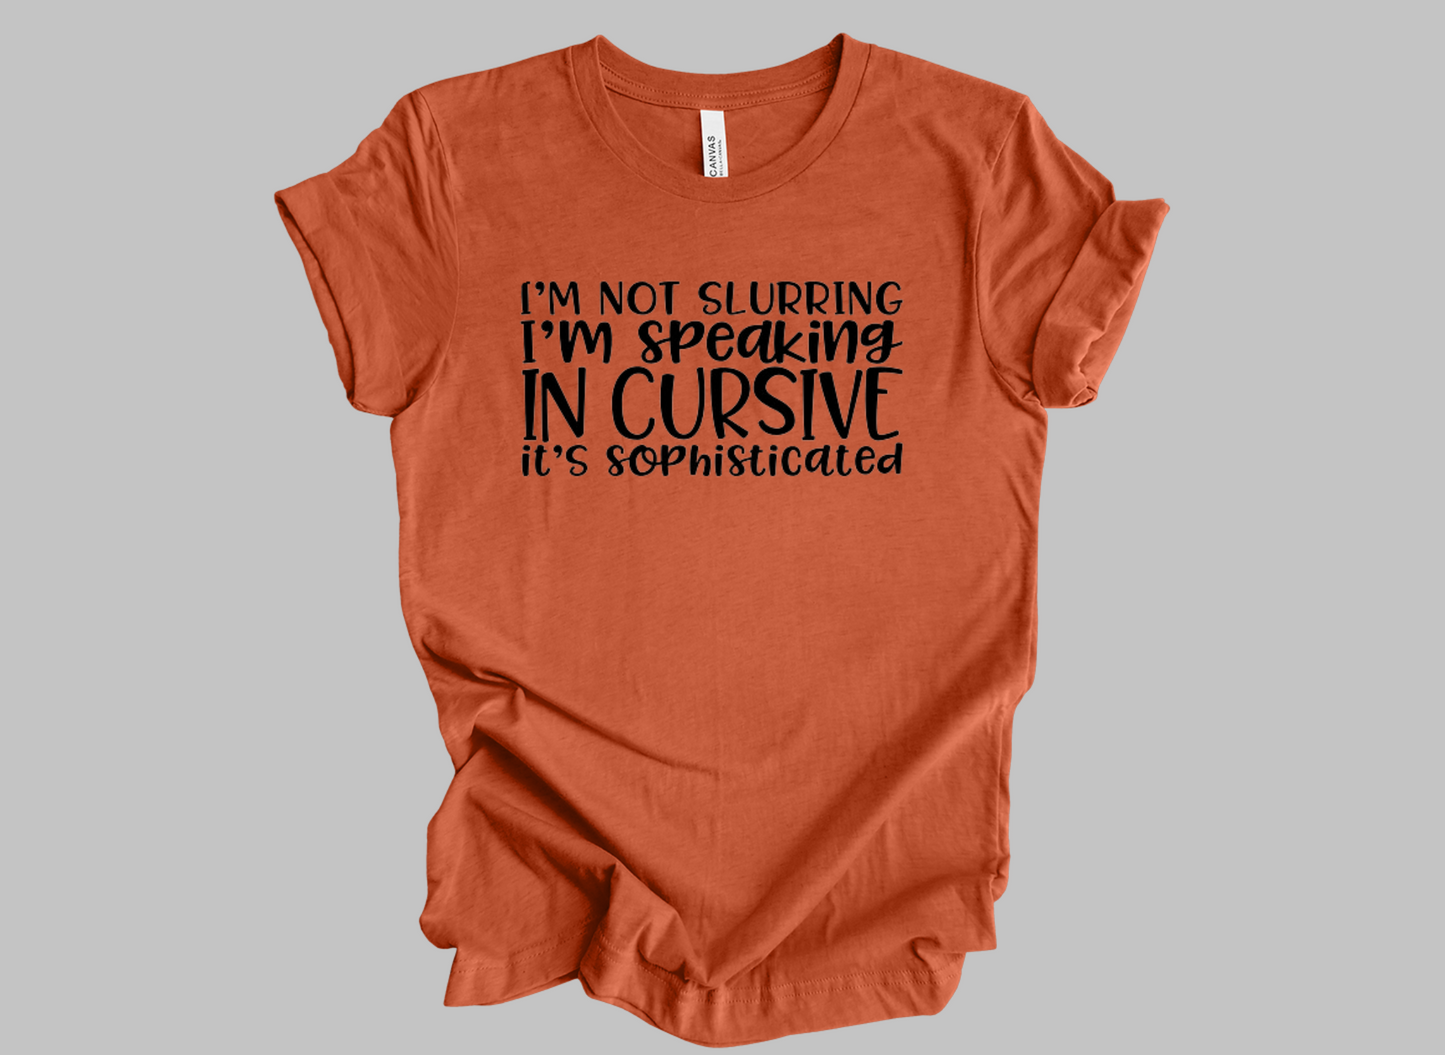 I'm Not Slurring - Adult Unisex T-Shirt